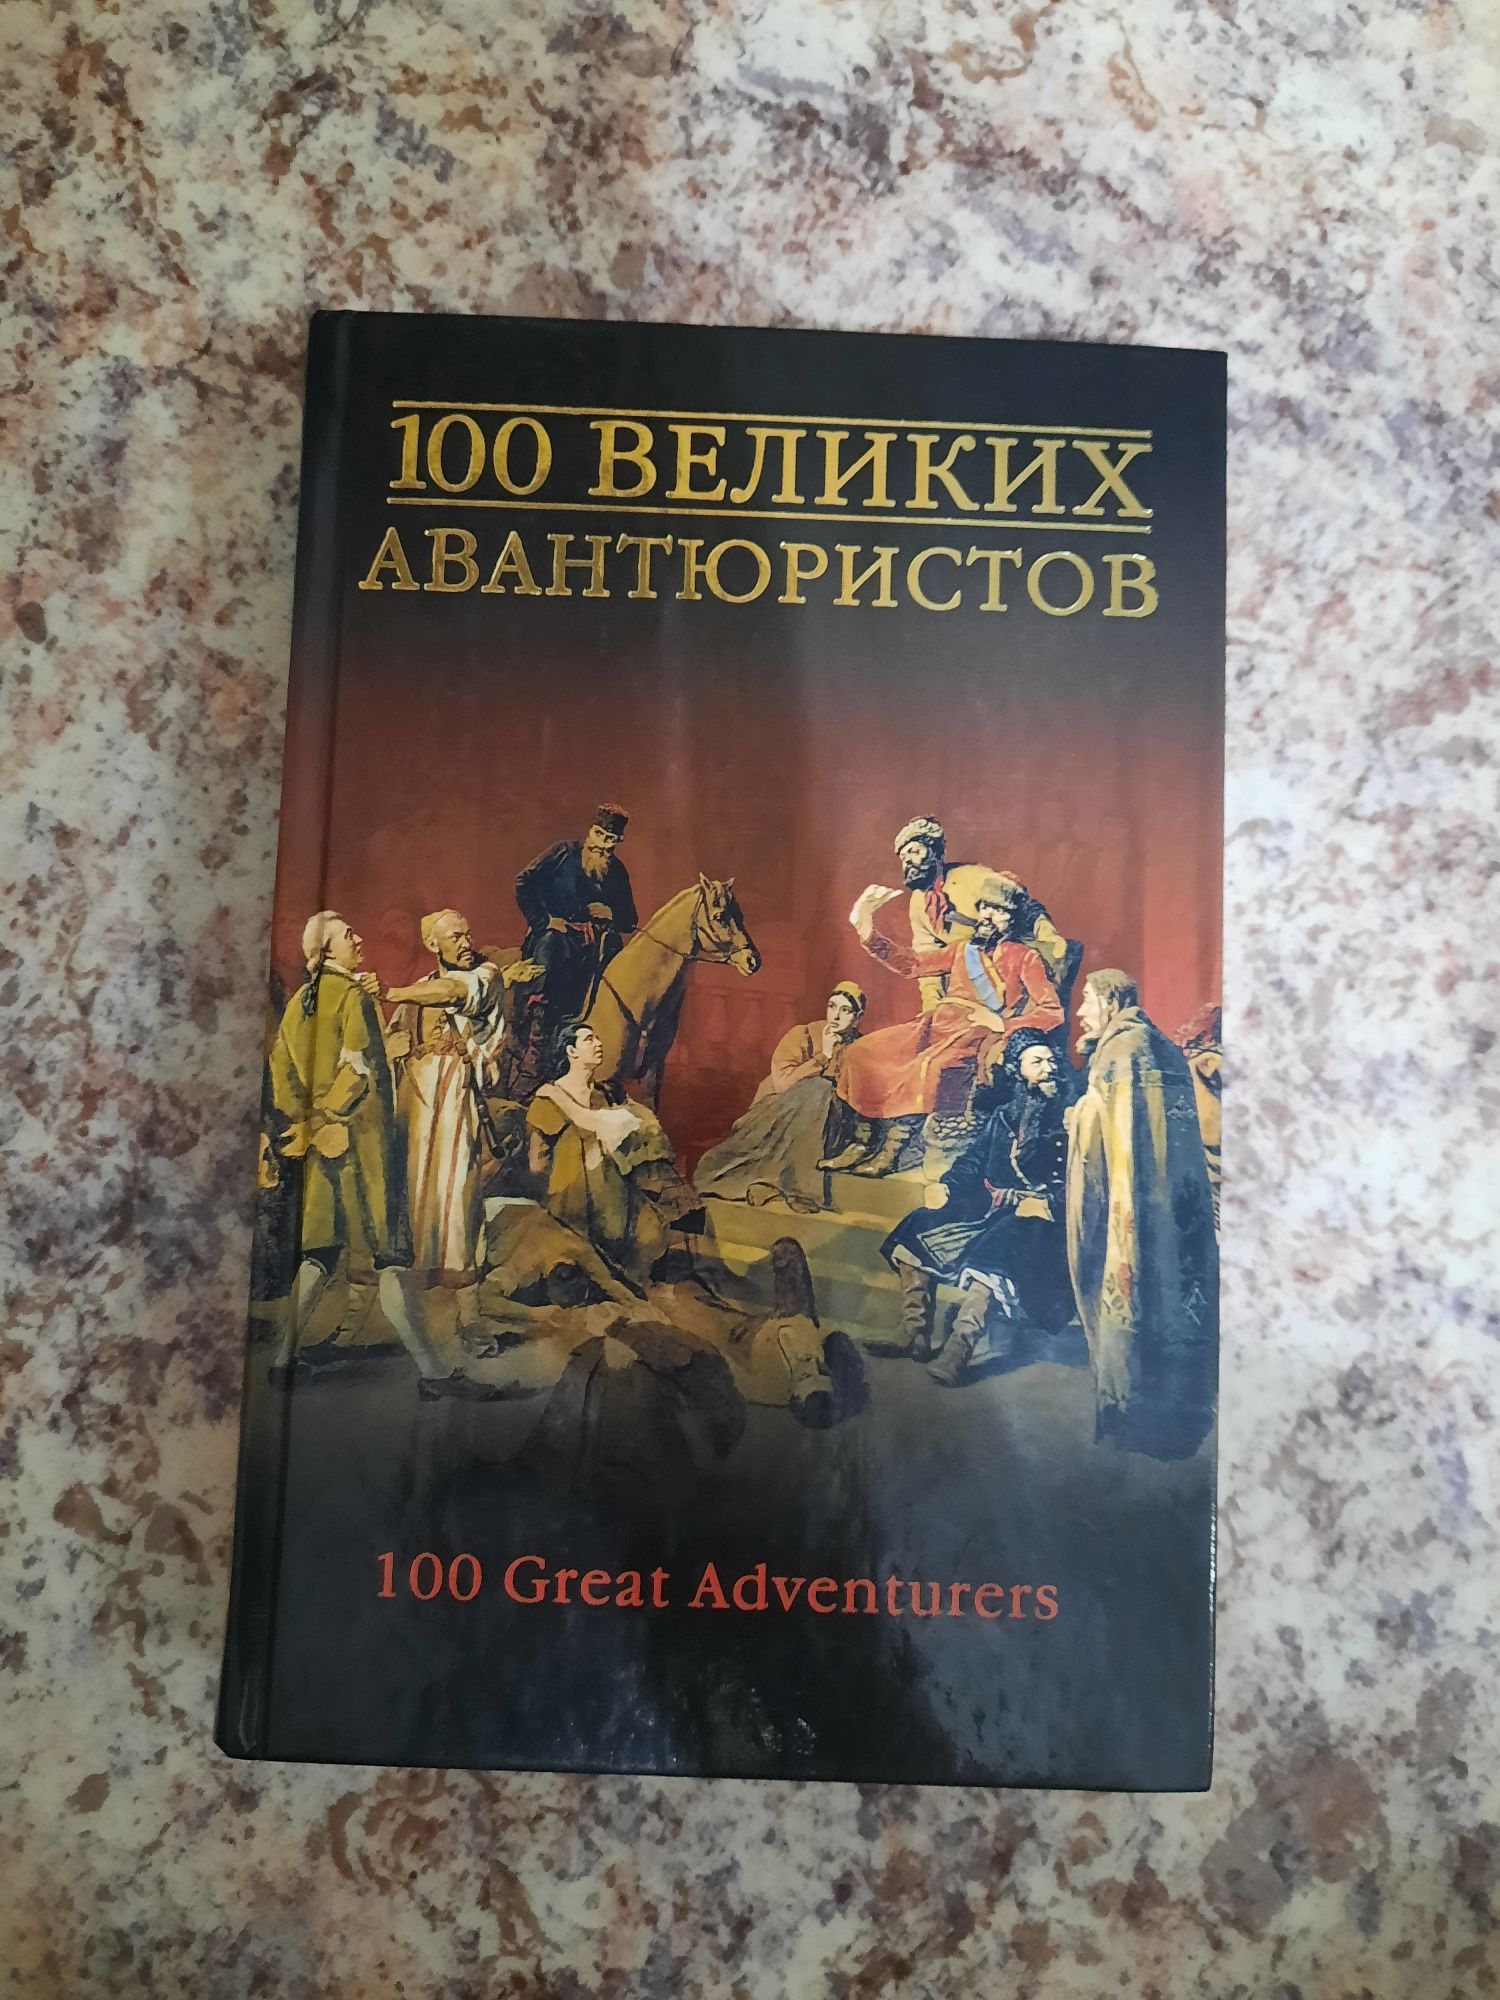 100 великих авантюристов